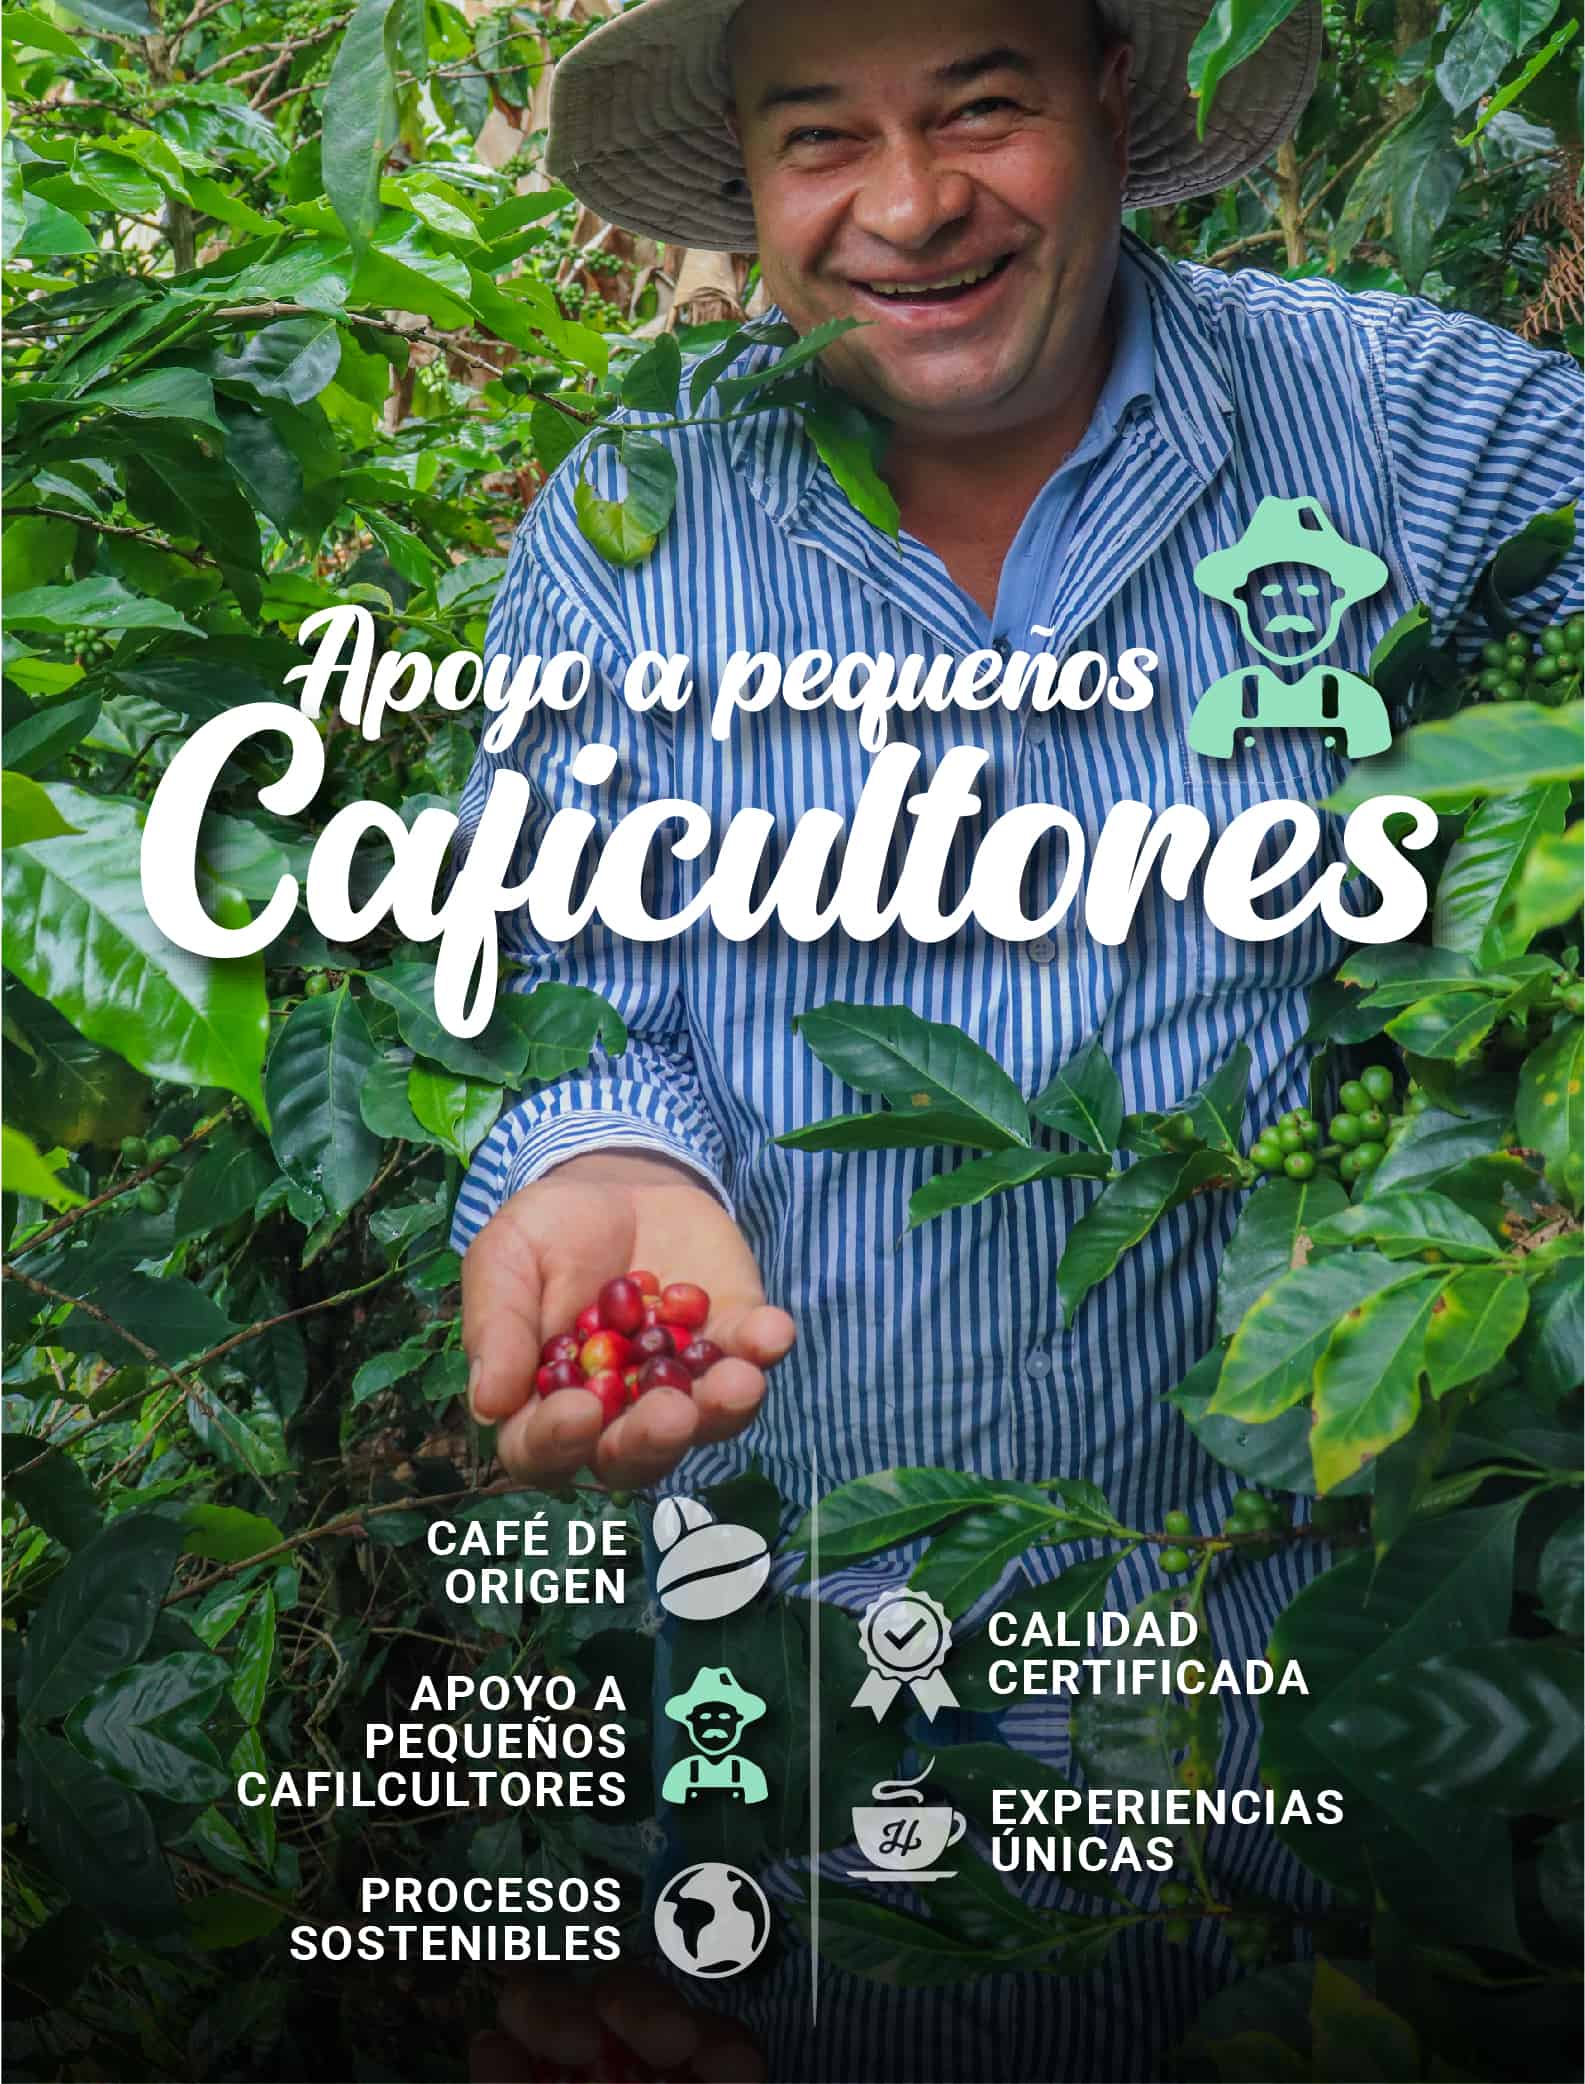 HATILLO_COFFEE_APOYO_PEQUENOS_CAFICULTORES